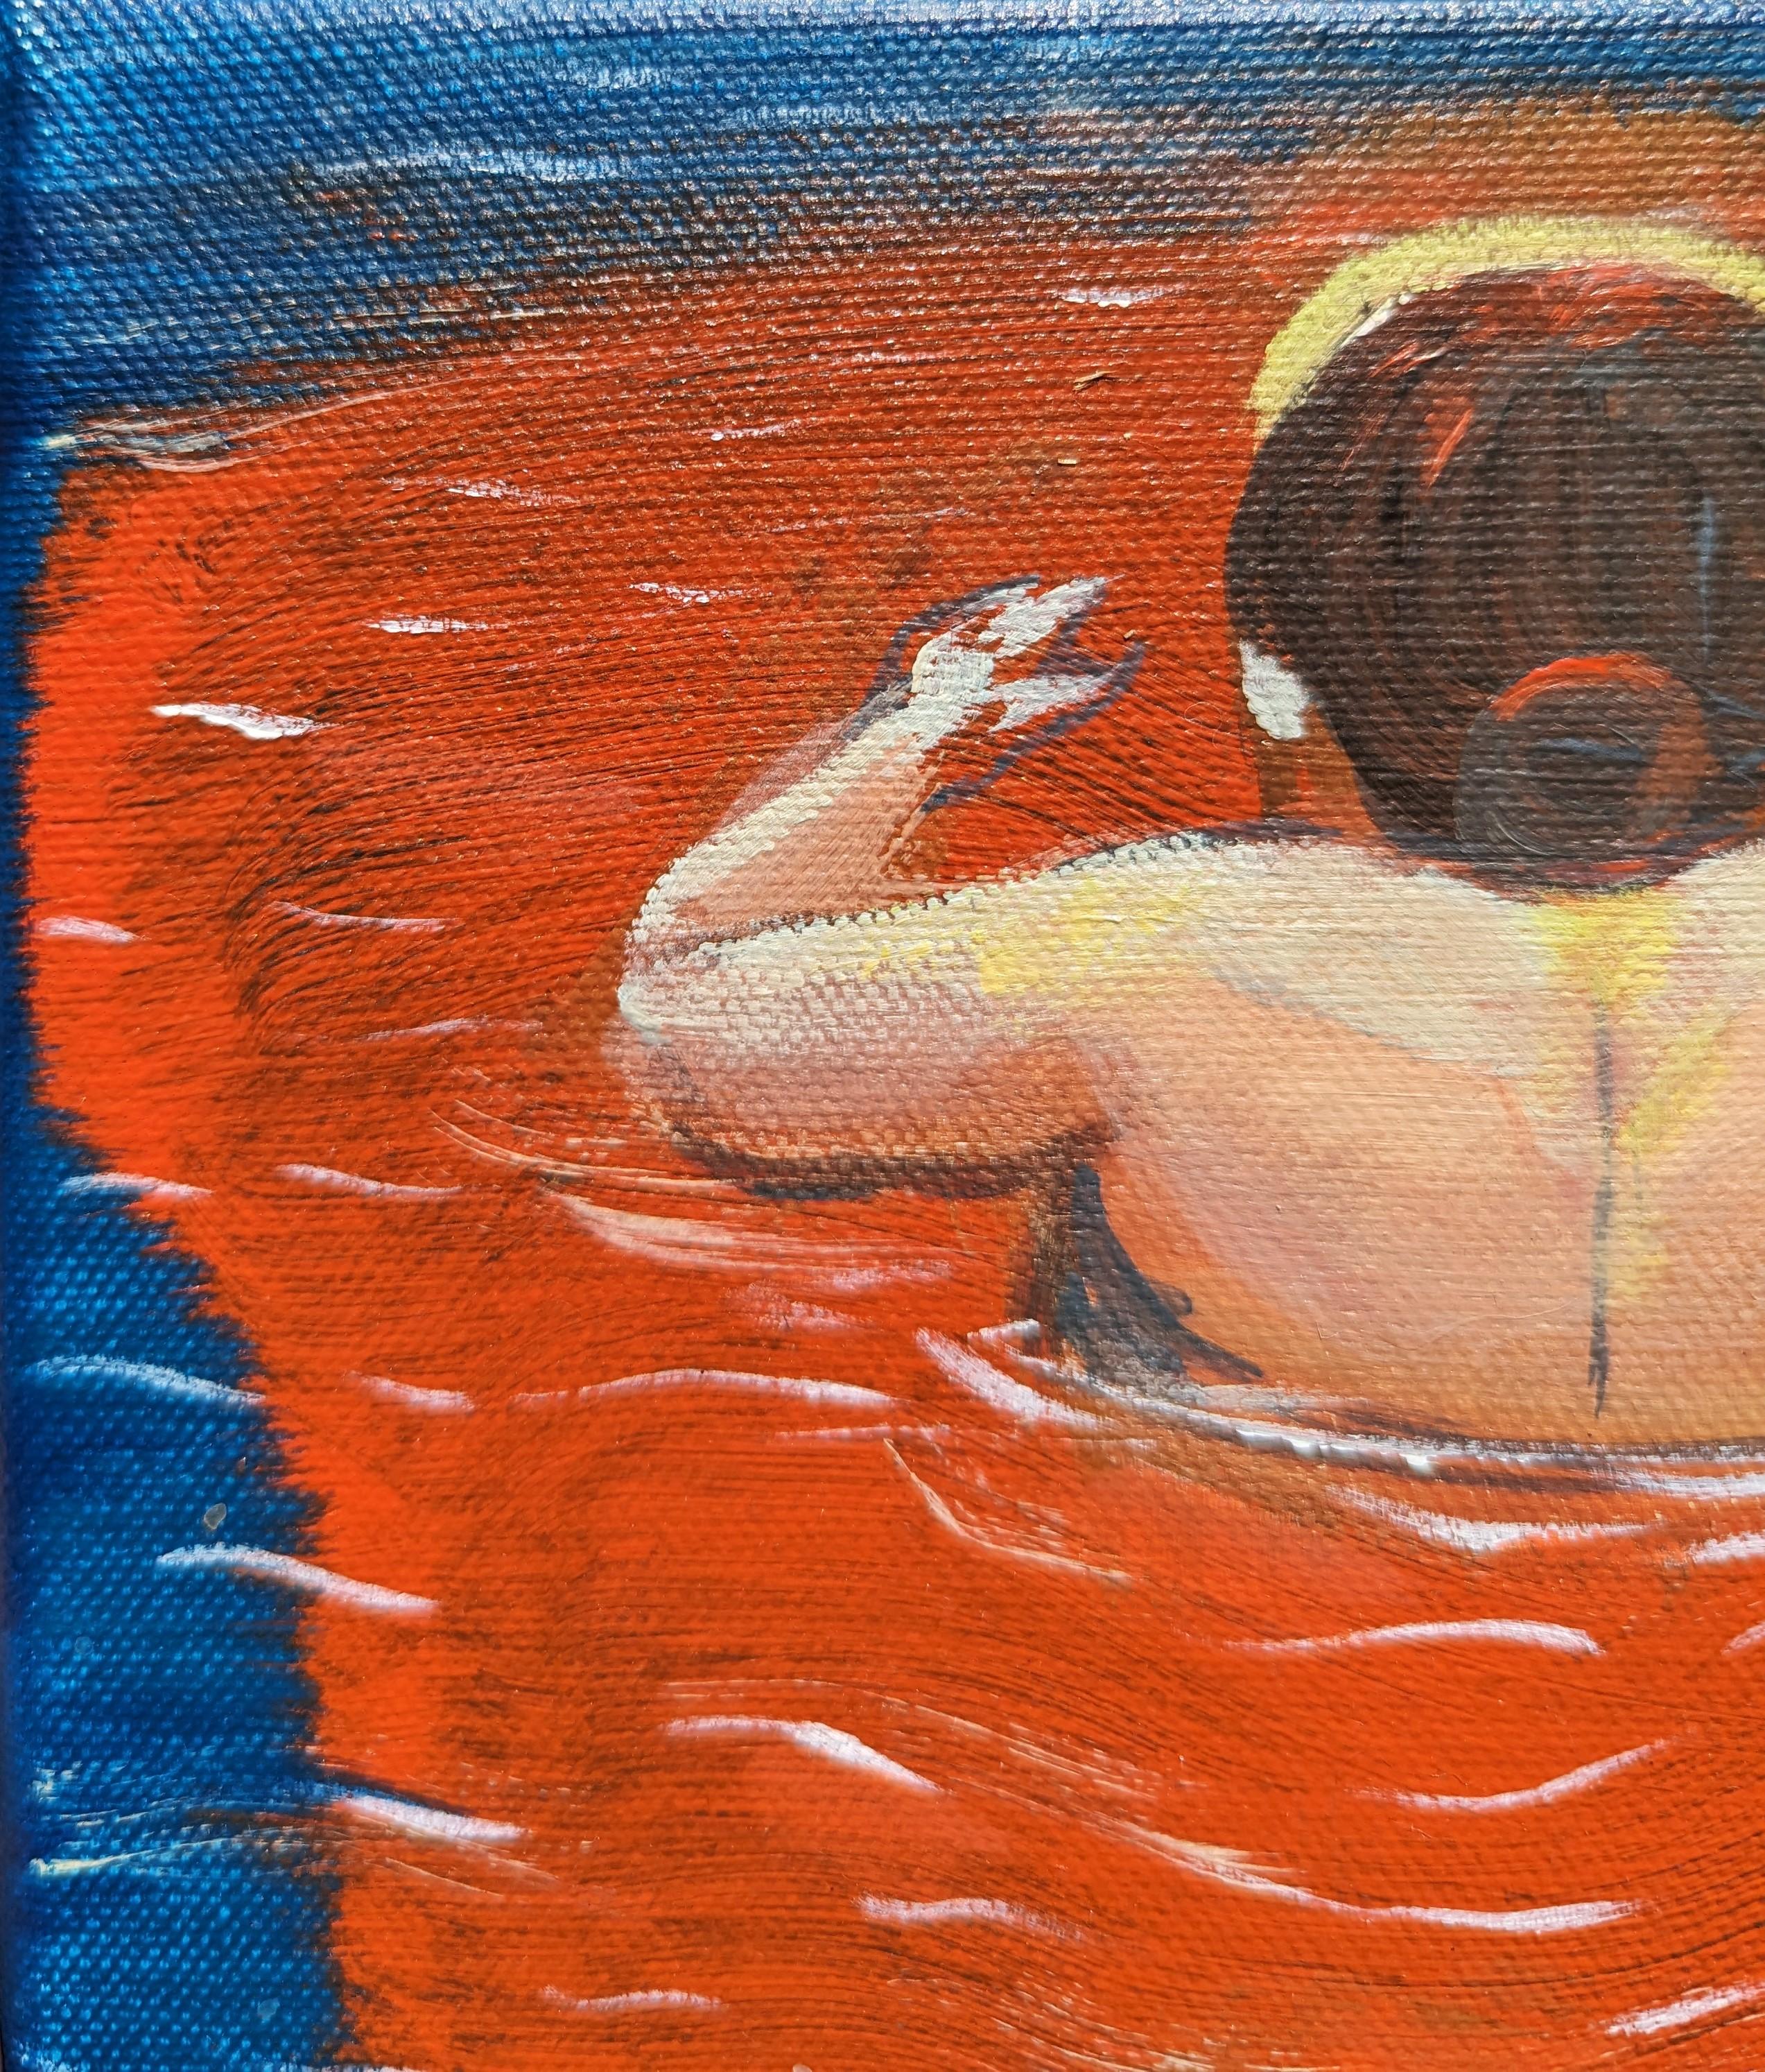 Blau und rot getöntes Gemälde des zeitgenössischen Künstlers Moisés Villafuerte aus Houston. Das Werk zeigt eine Frau inmitten einer roten Pfütze, die den Rio Bravo, auch Rio Grande genannt, überquert. Rückseitig signiert, betitelt und datiert.